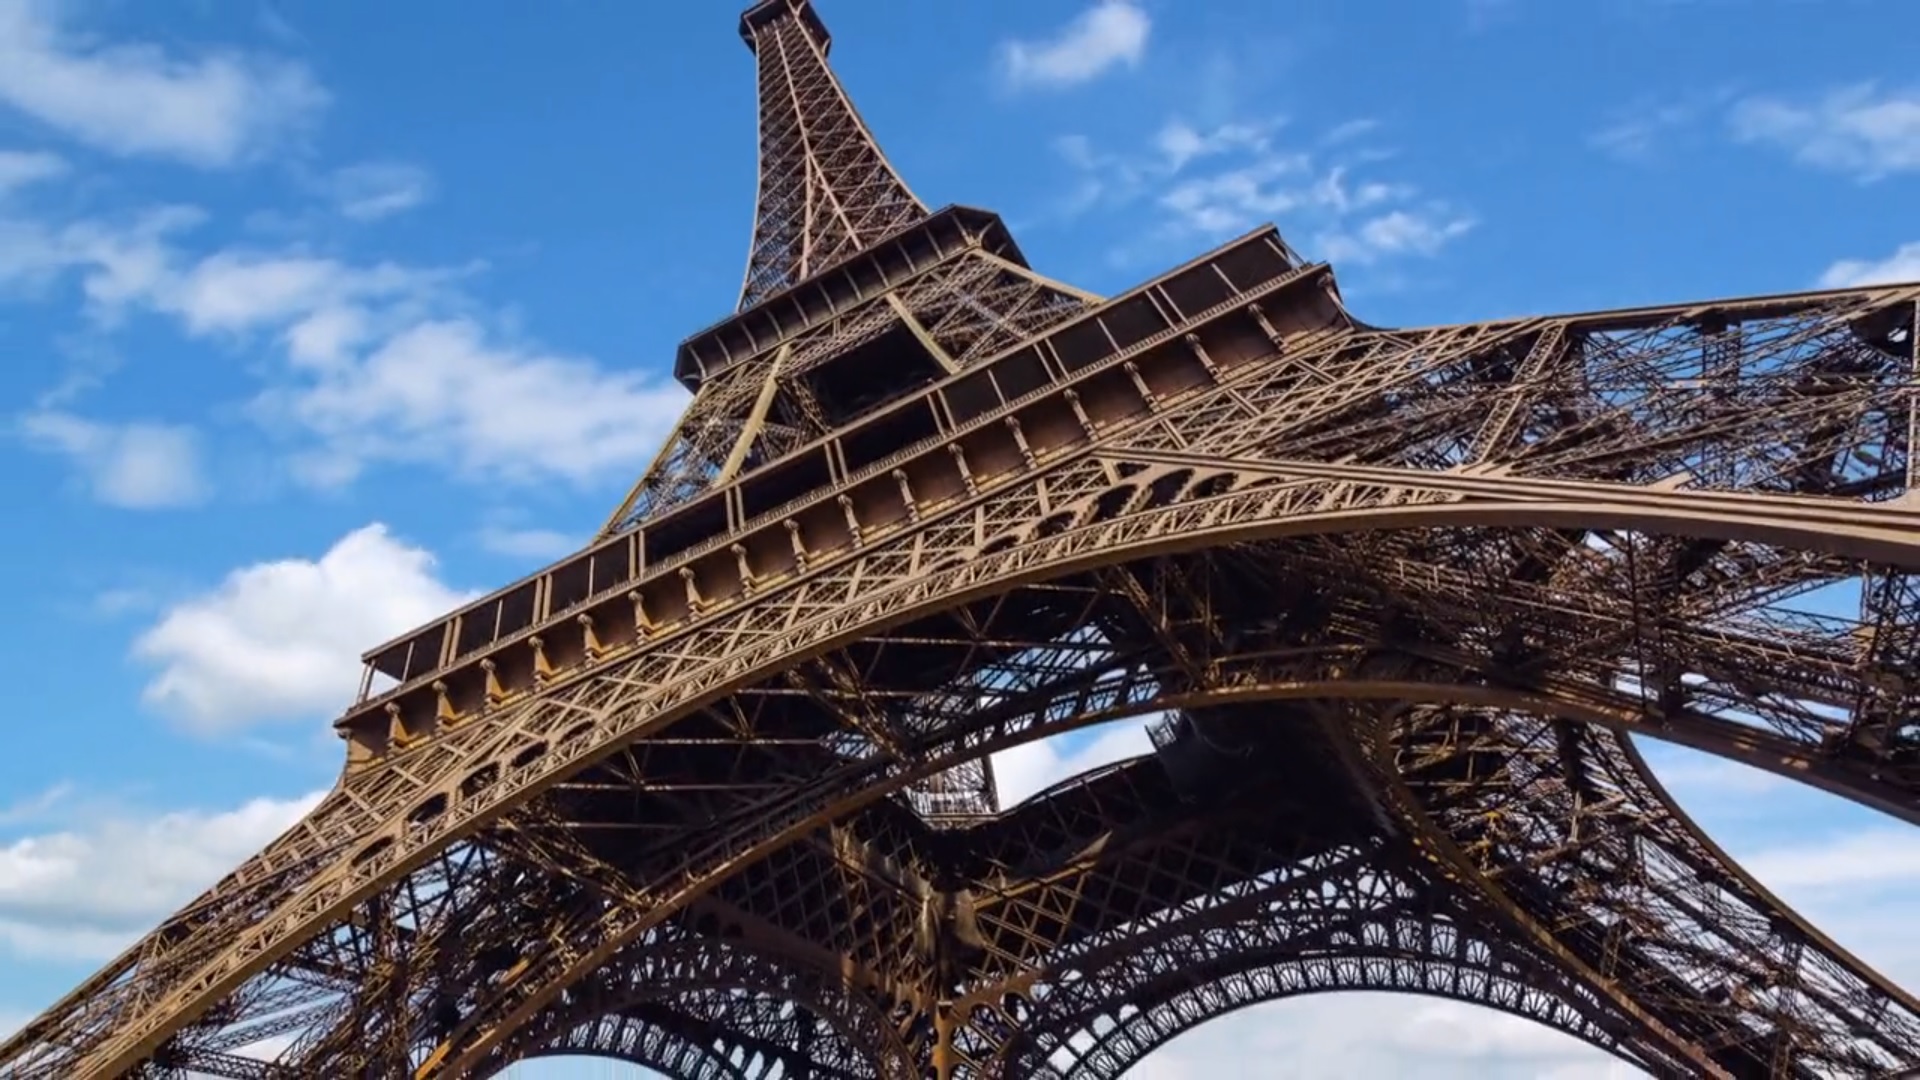 La Torre Eiffel - La Dama Di Ferro [credit: Copyright Getty Image; courtesy of Nexo Digital]